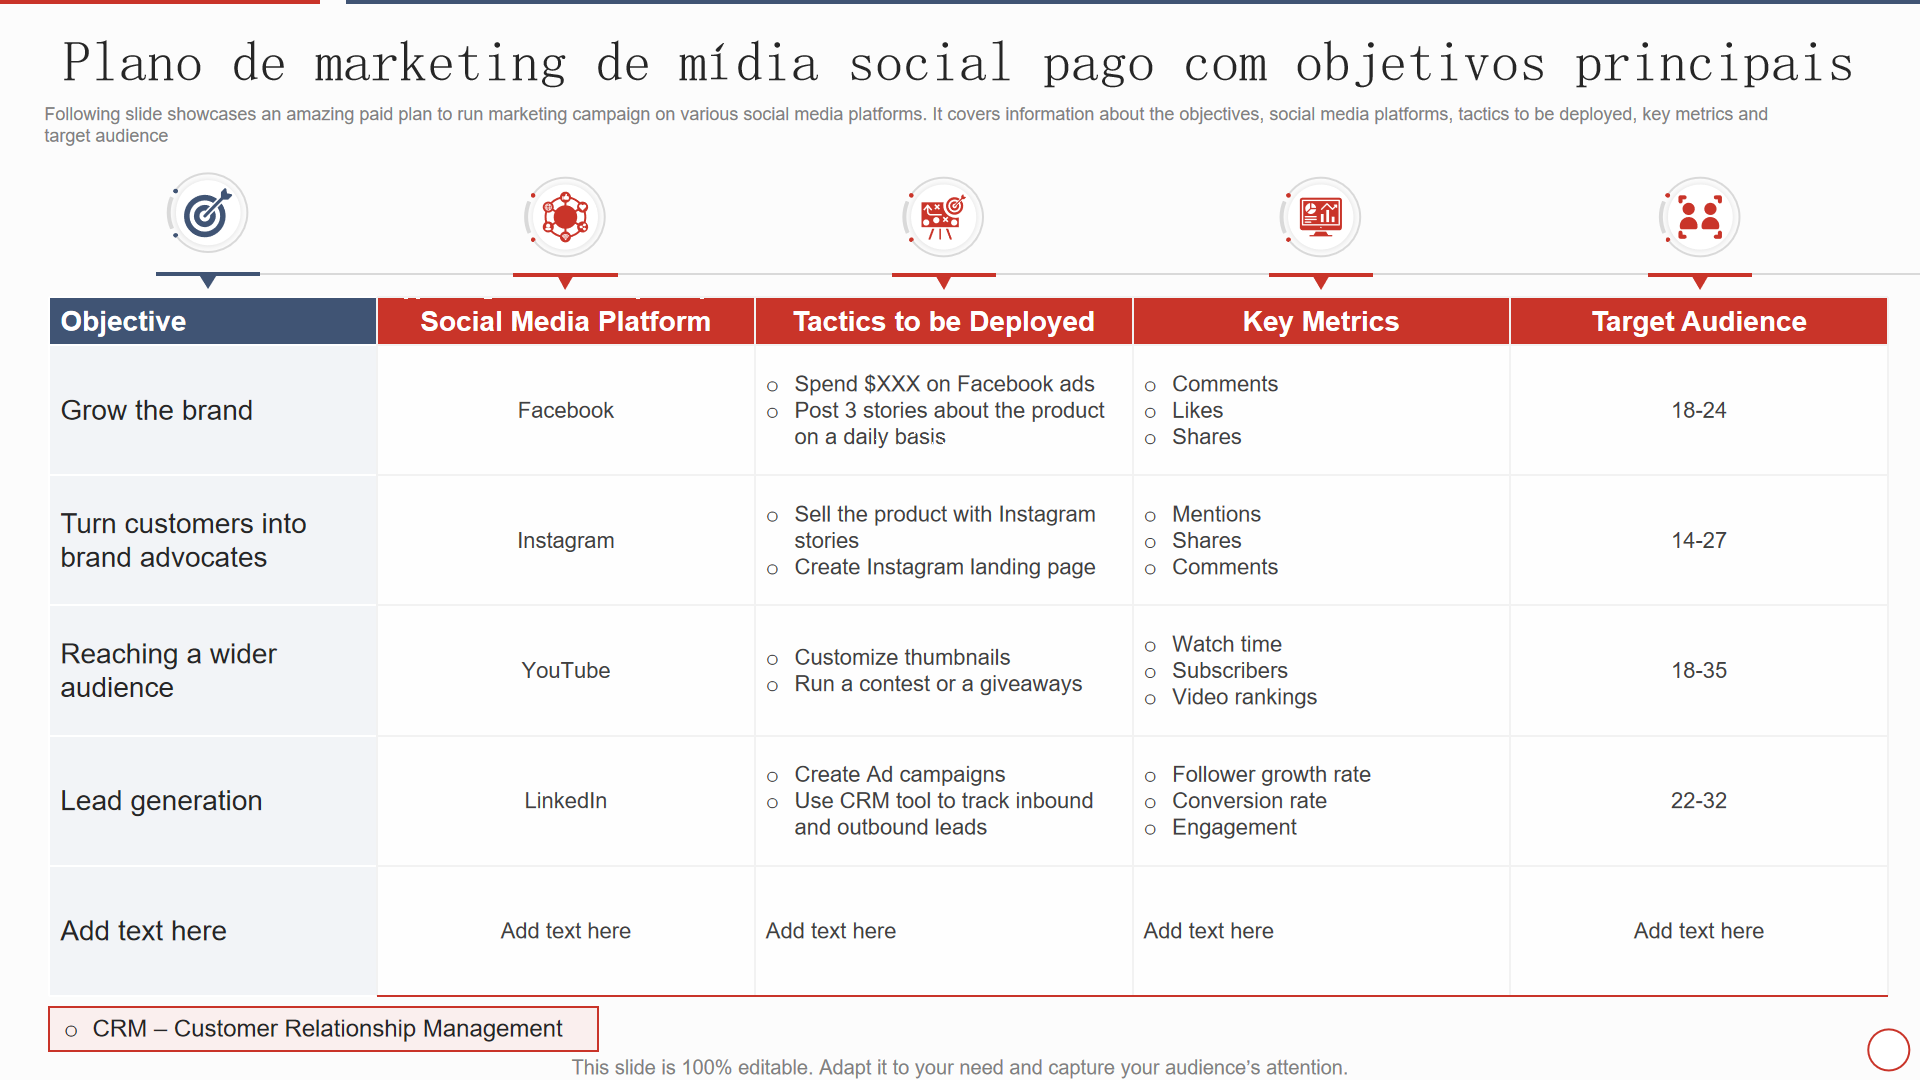 Plano de marketing de mídia social pago com objetivos principais